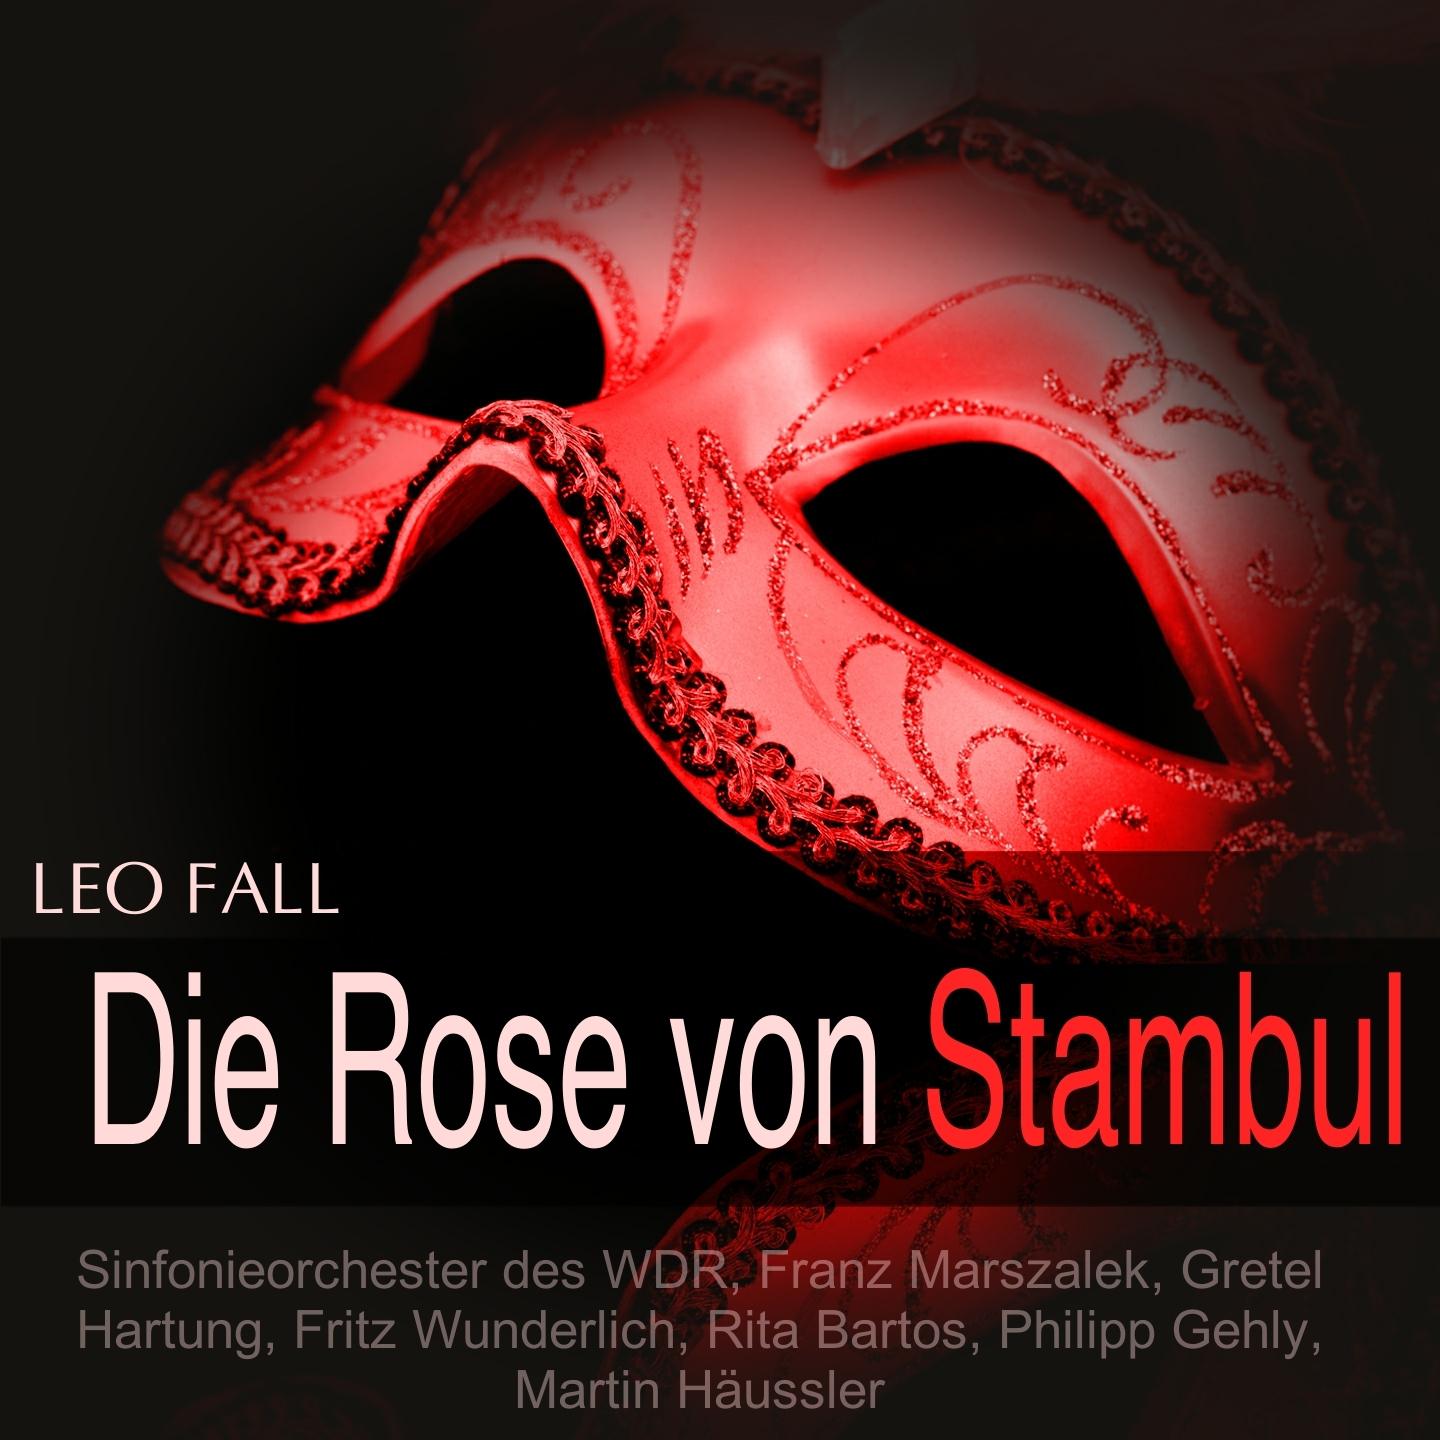 Die Rose von Stambul, Act II: " Ich hab' noch nie einen Mann gekü sst"  " Fridolin, Fridolin" Midili, Fridolin